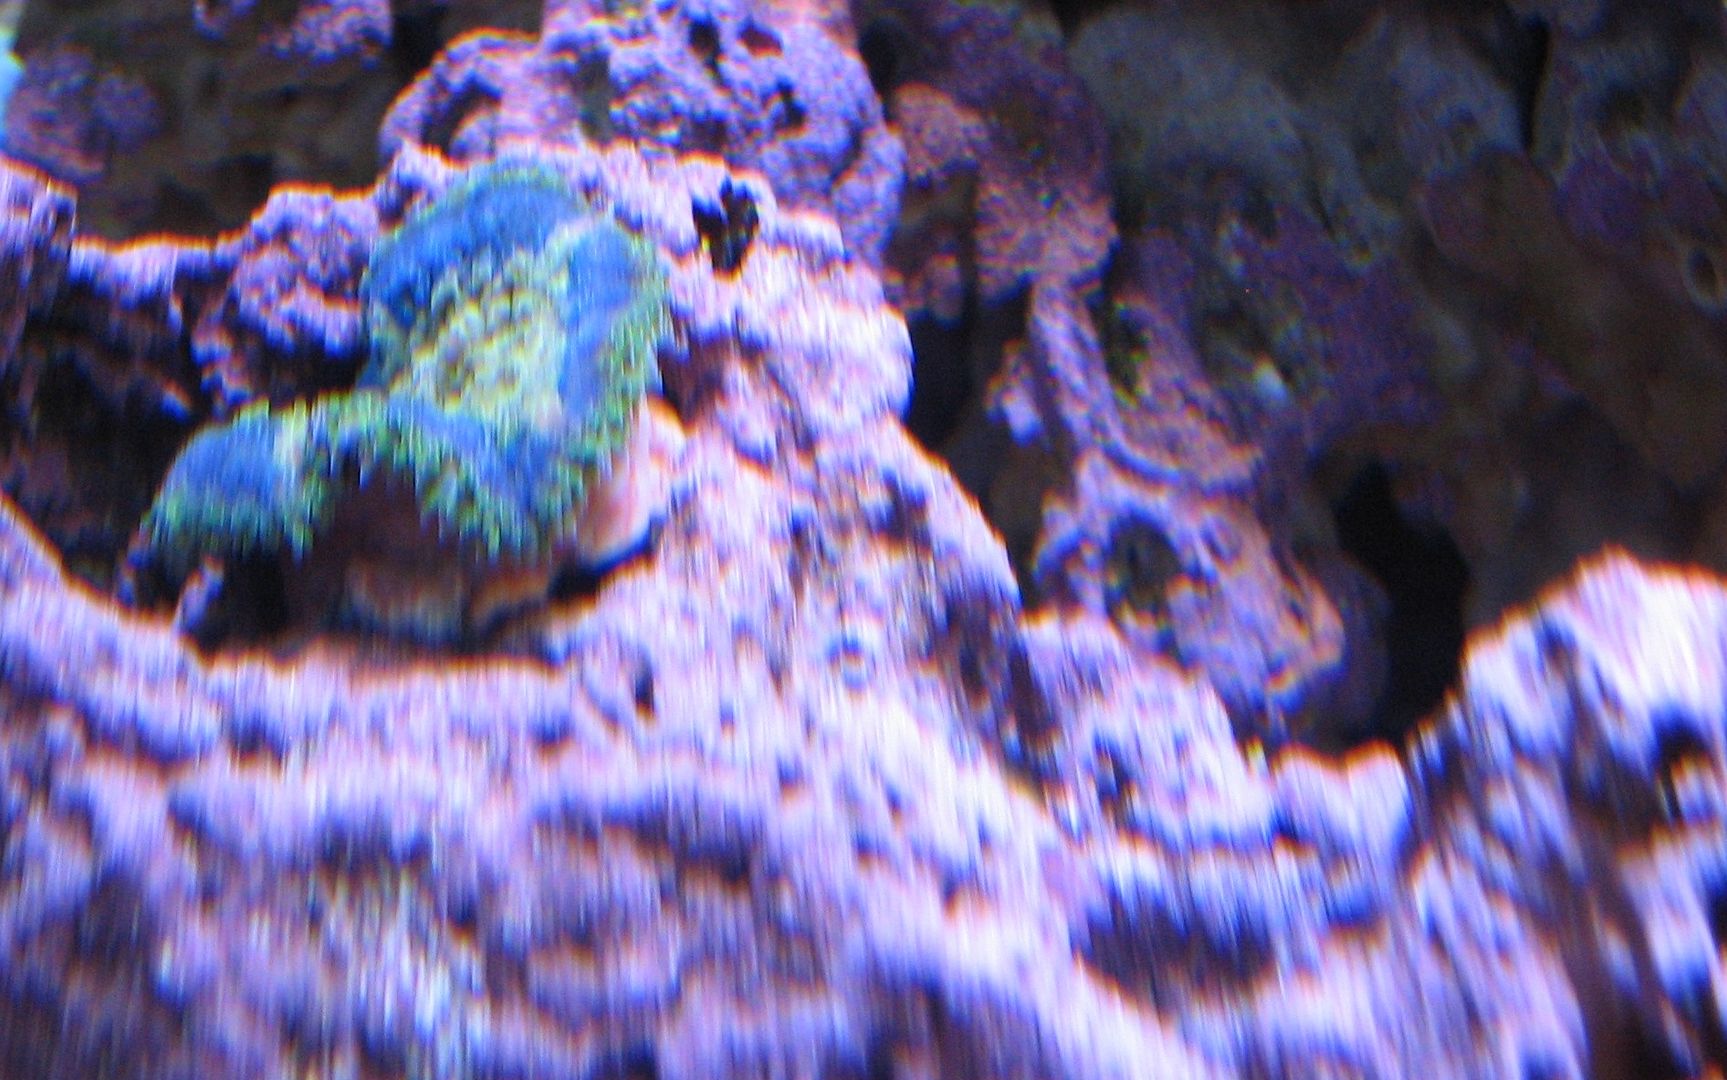 Aquarium_BlueMaxiMiniJustIn_02MAY2012.jpg